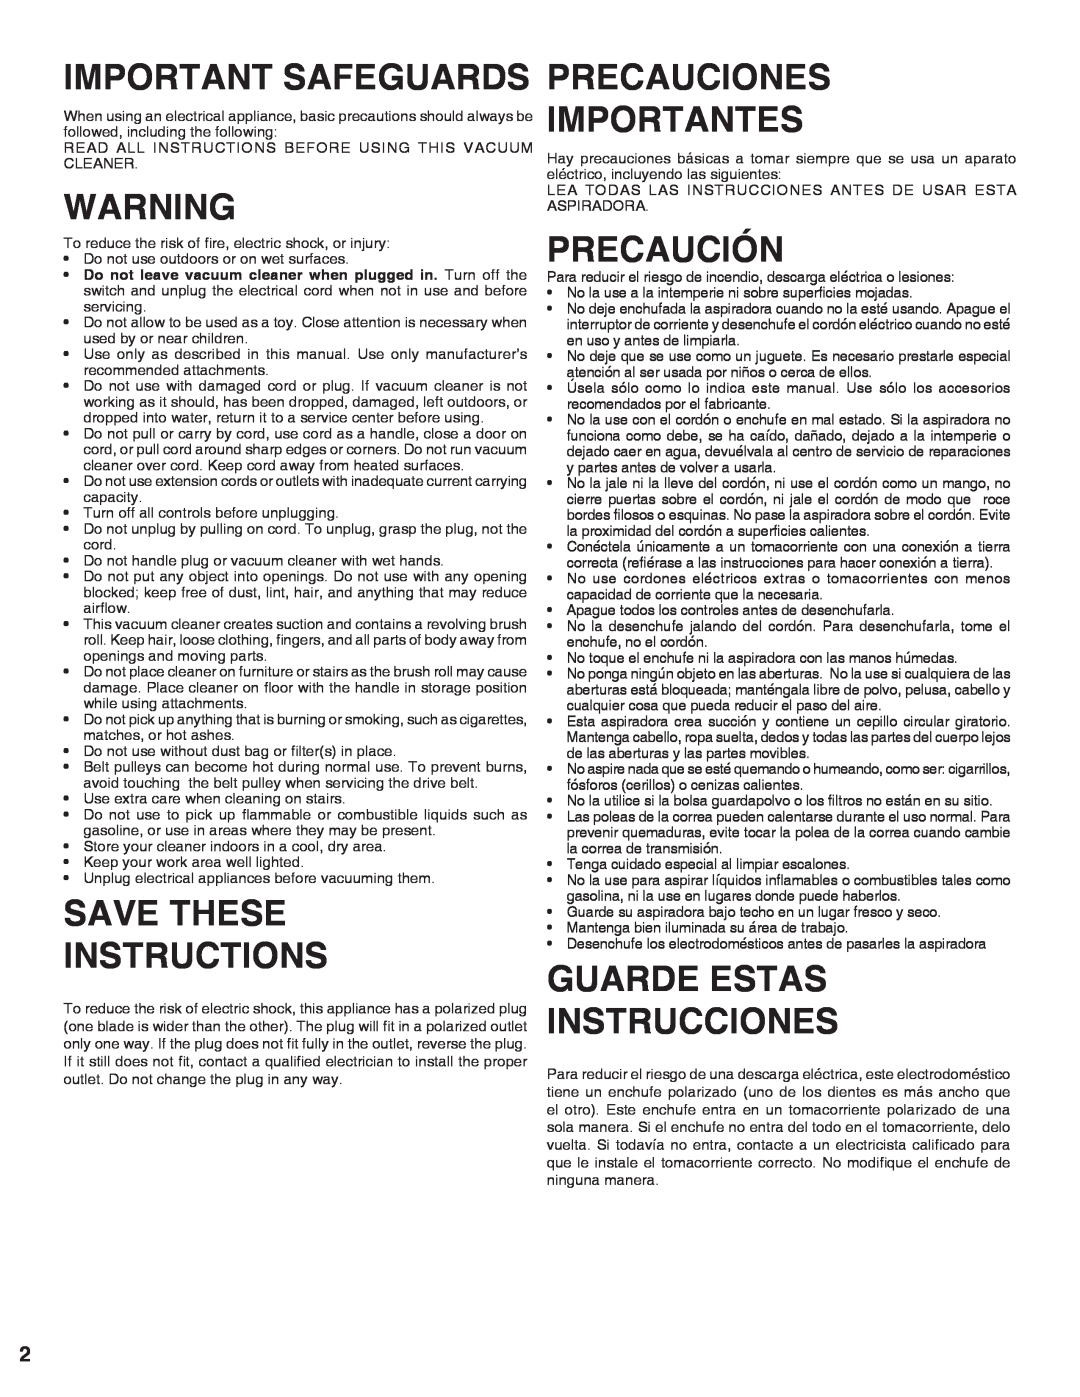 Sanitaire 9100 Series warranty Important Safeguards, Save These Instructions, Precauciones Importantes, Precaución 